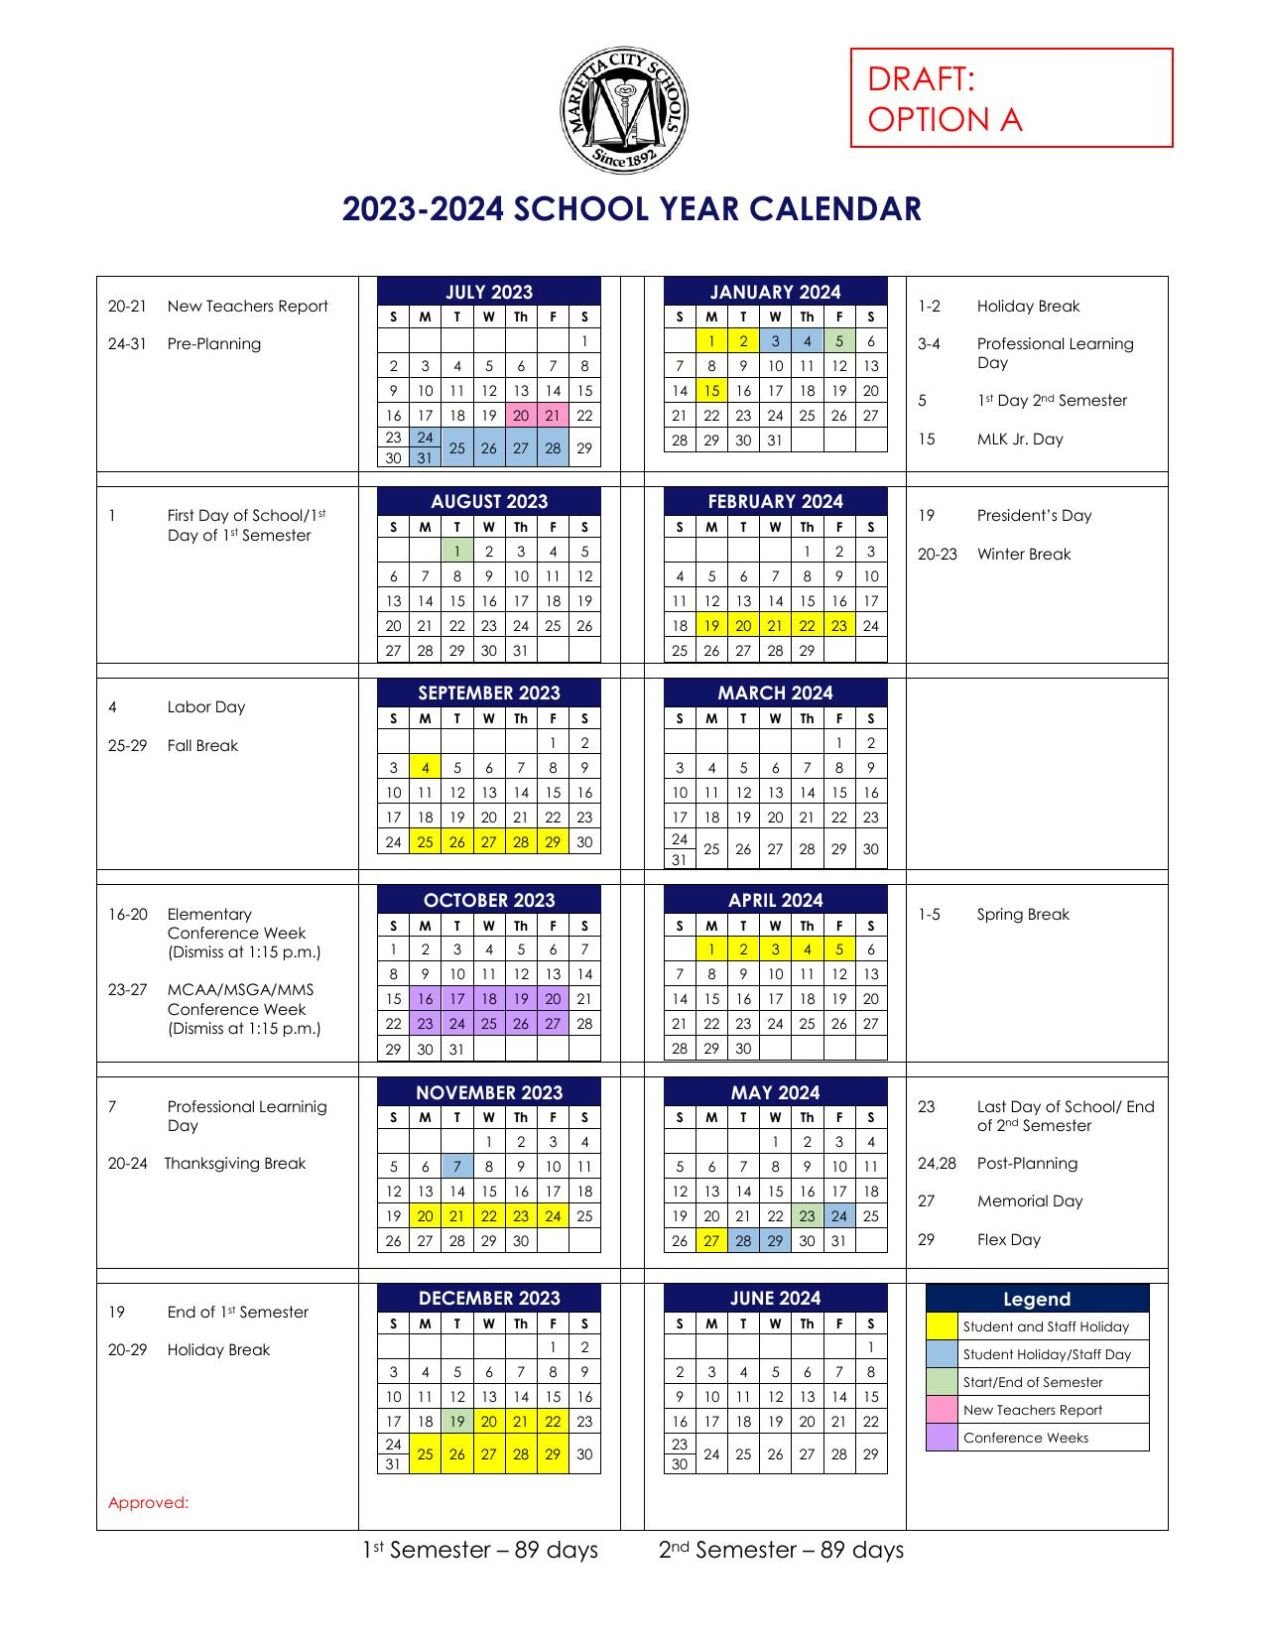 European School Calendar 2023 2024 – Get Calendar 2023 Update